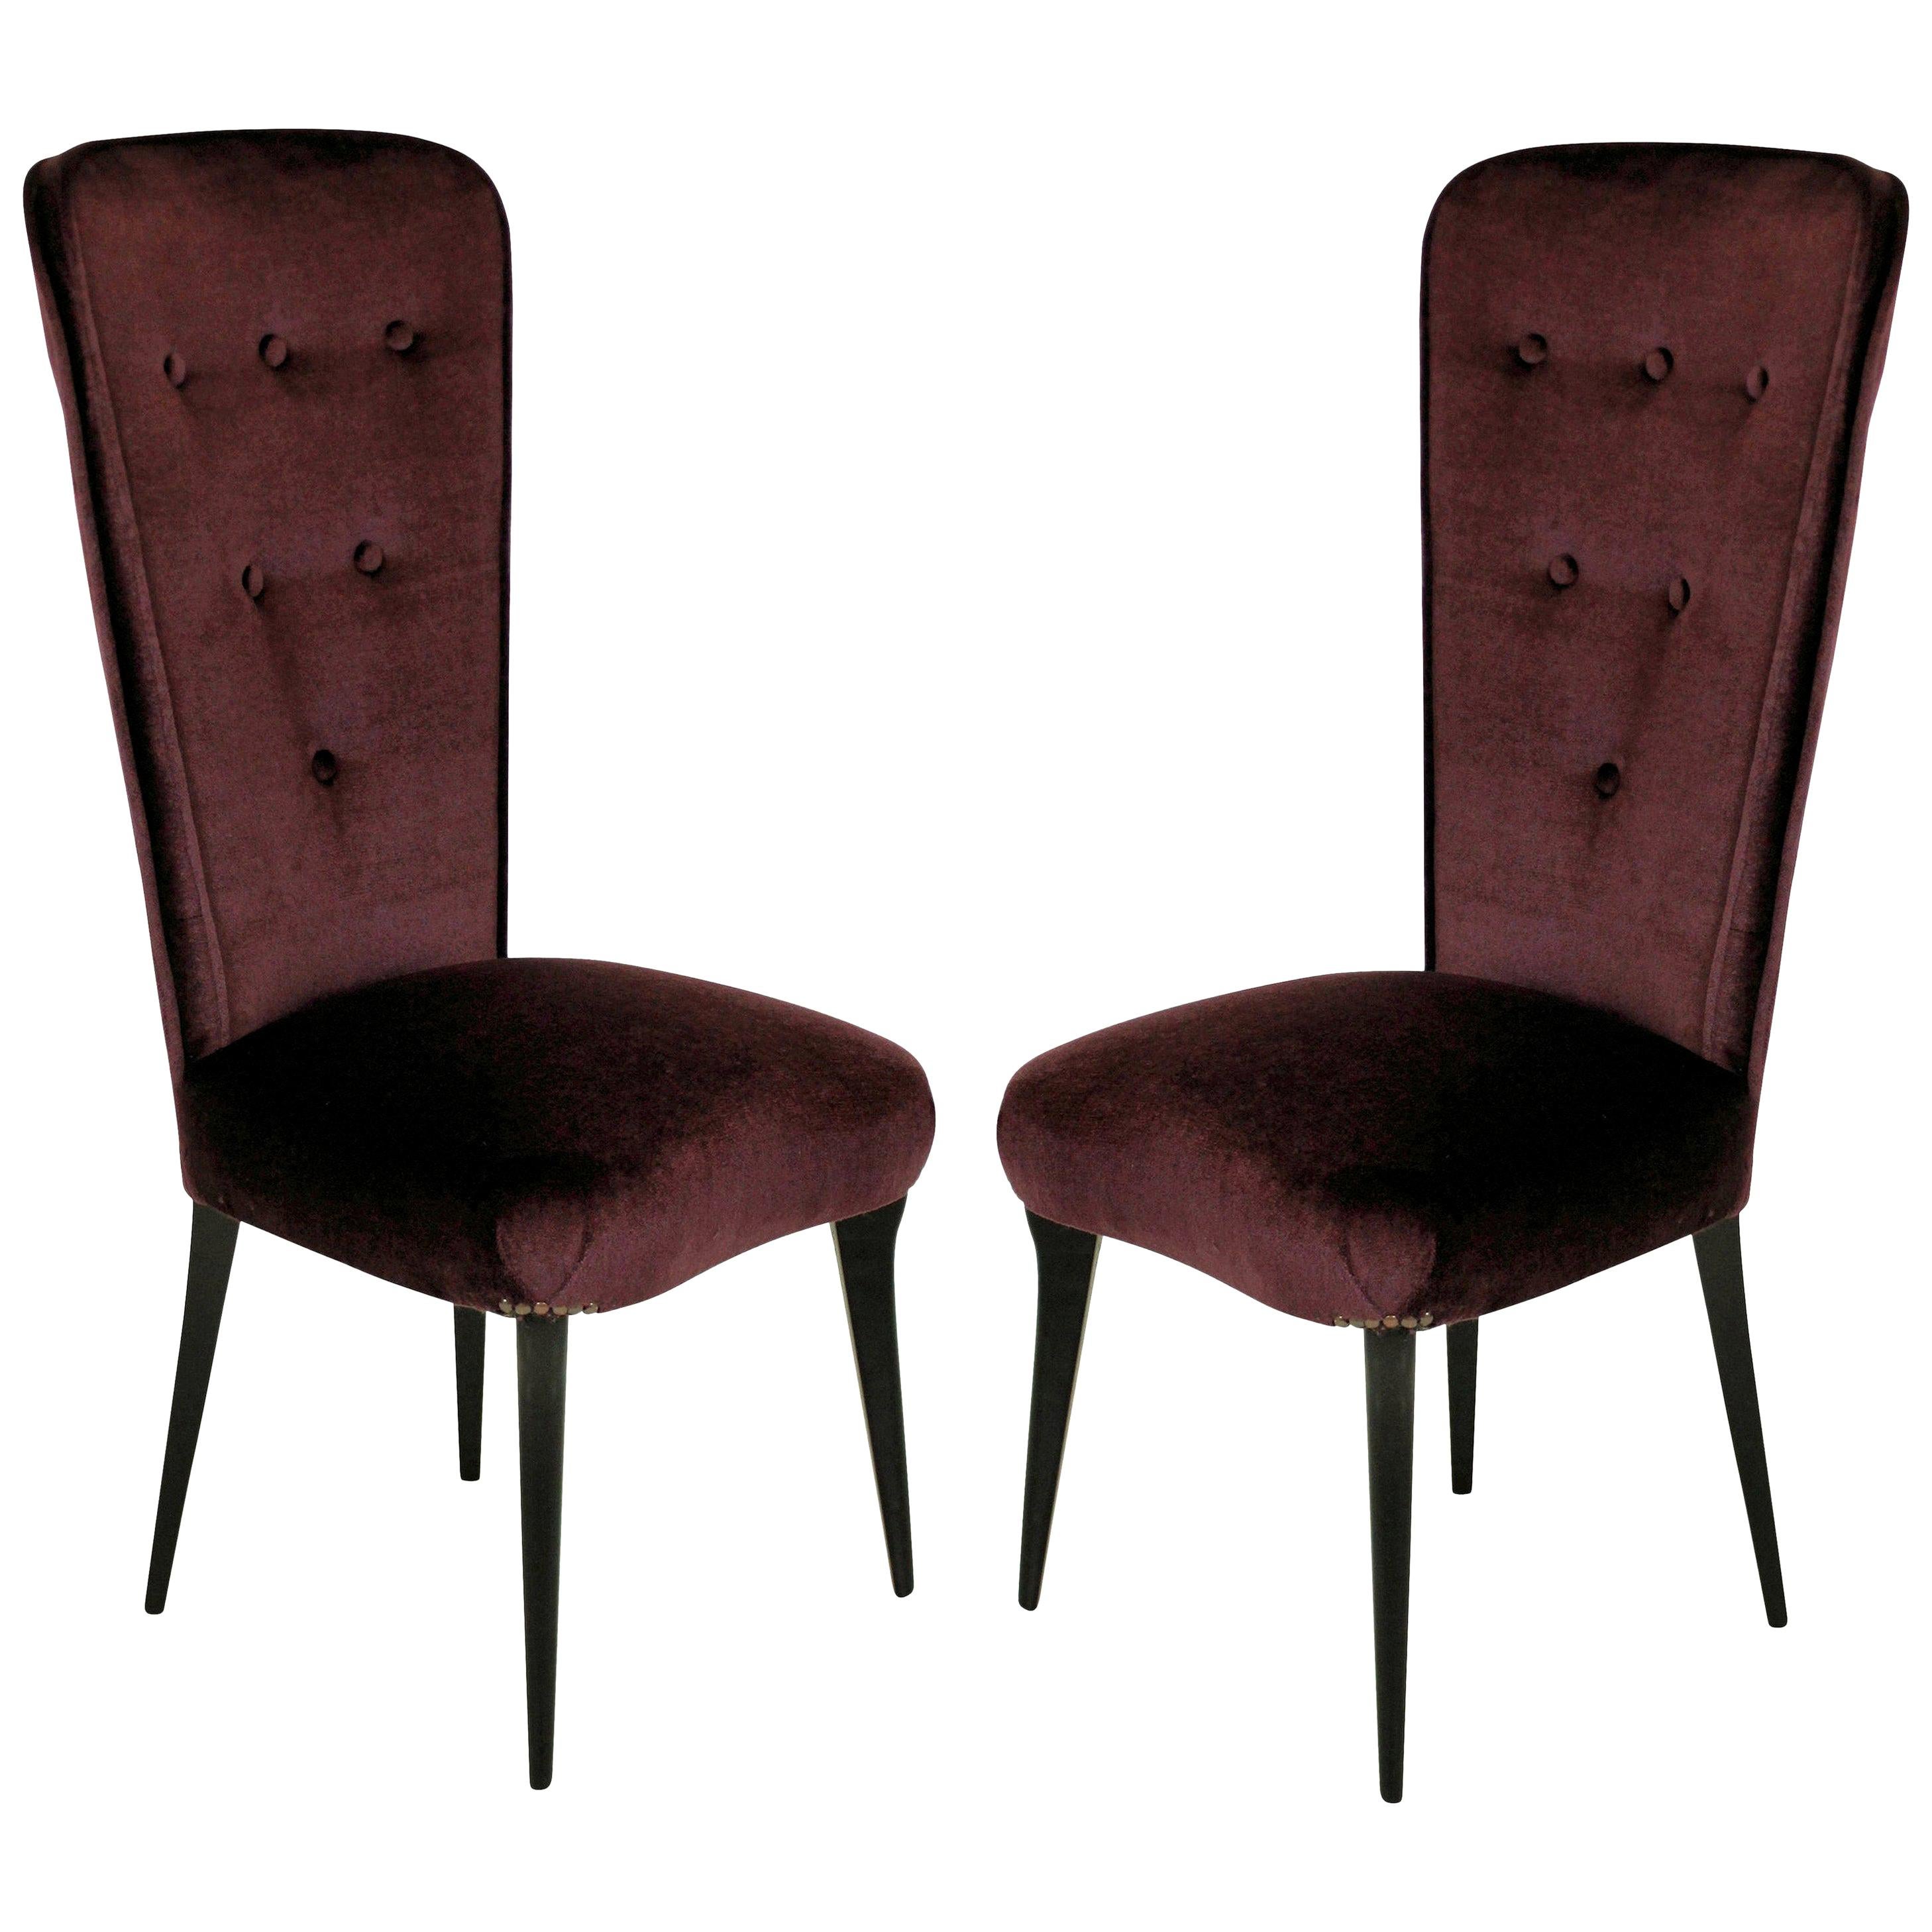 Pair of Stylish Italian Bedroom Chairs in Mohair Velvet